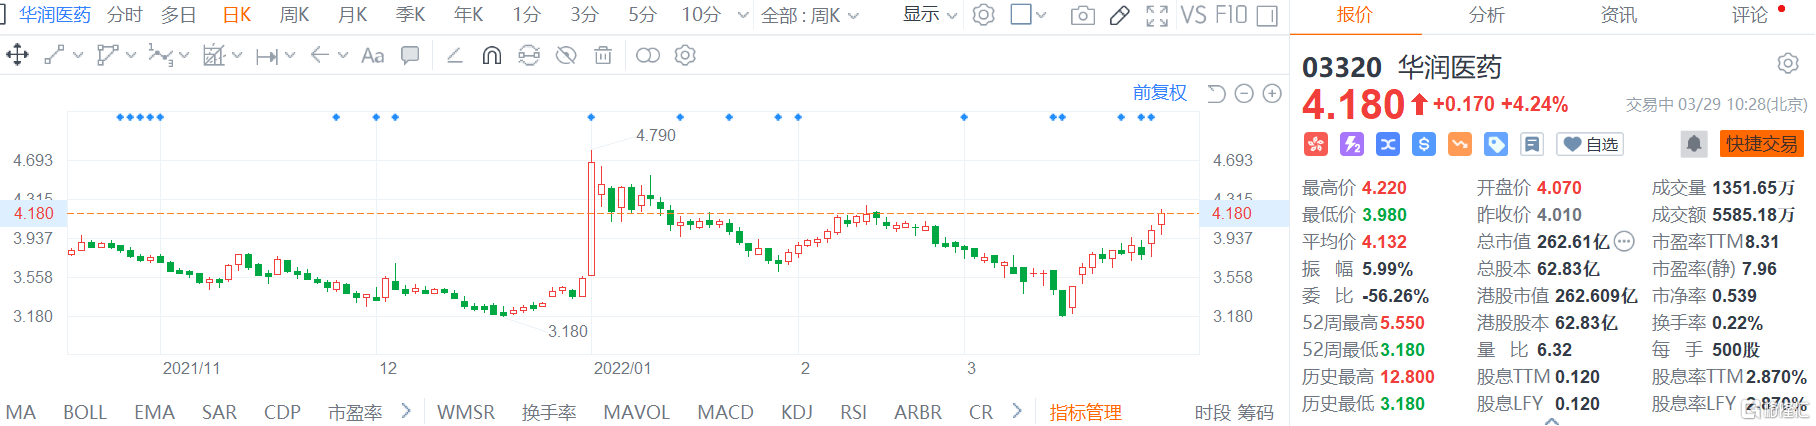 华润医药(3320.HK)股价继续走强 现报4.18港元创逾一个月新高